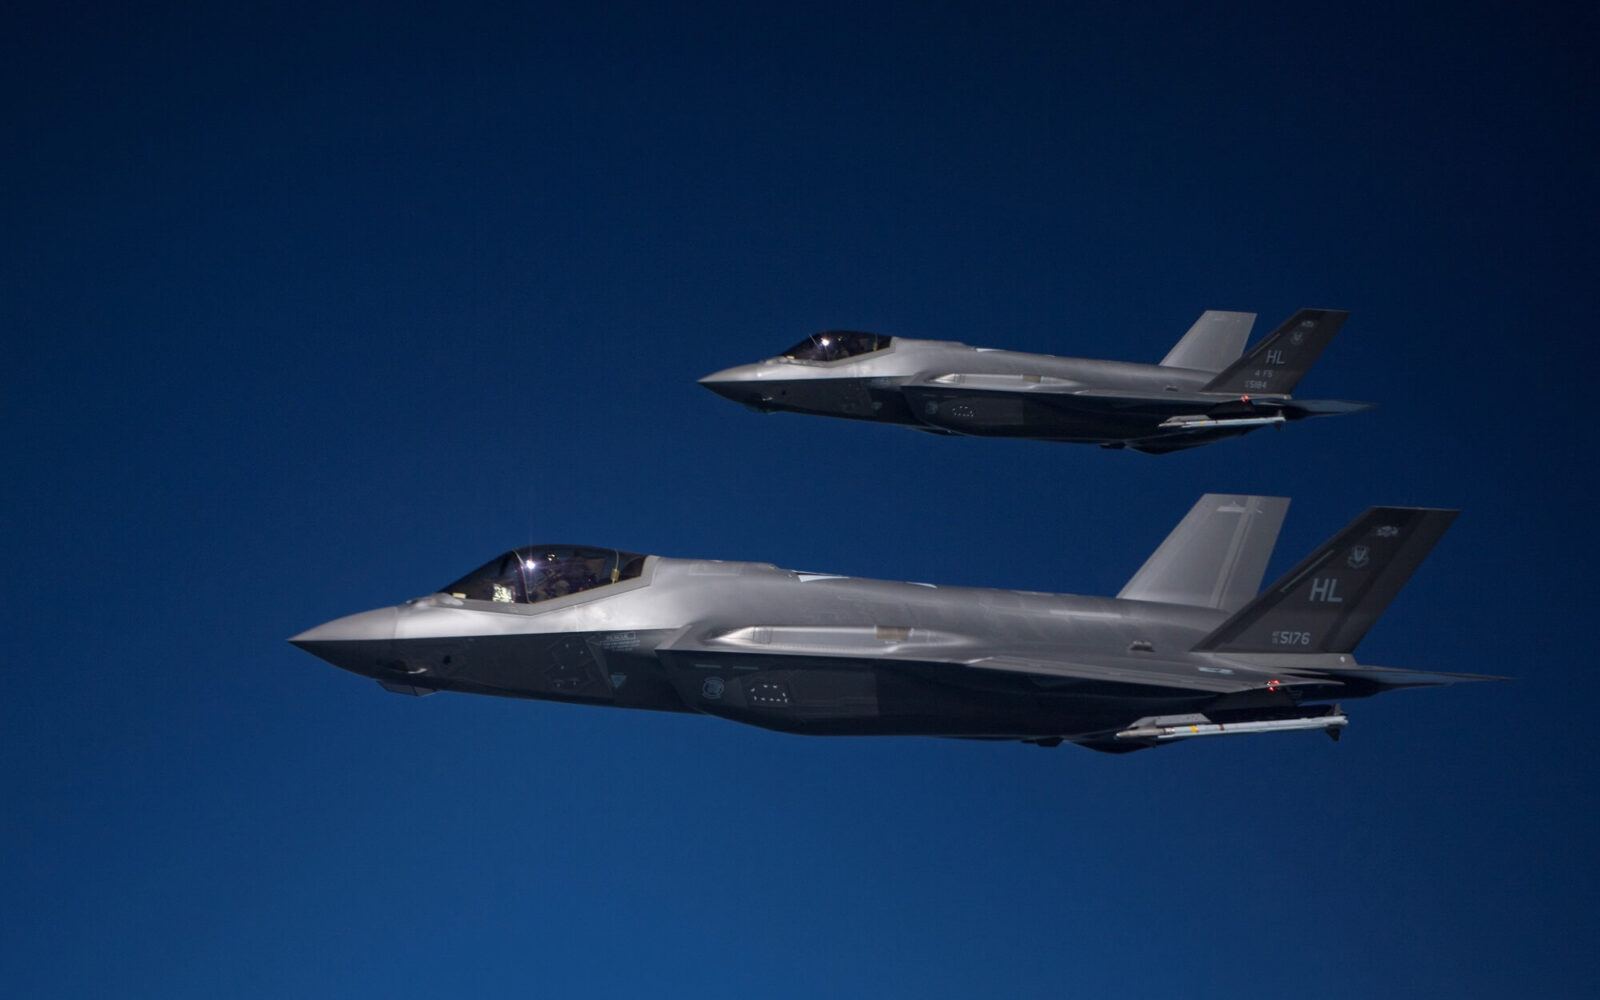 Spain dismisses rumors of F-35 fighter jet order - AeroTime